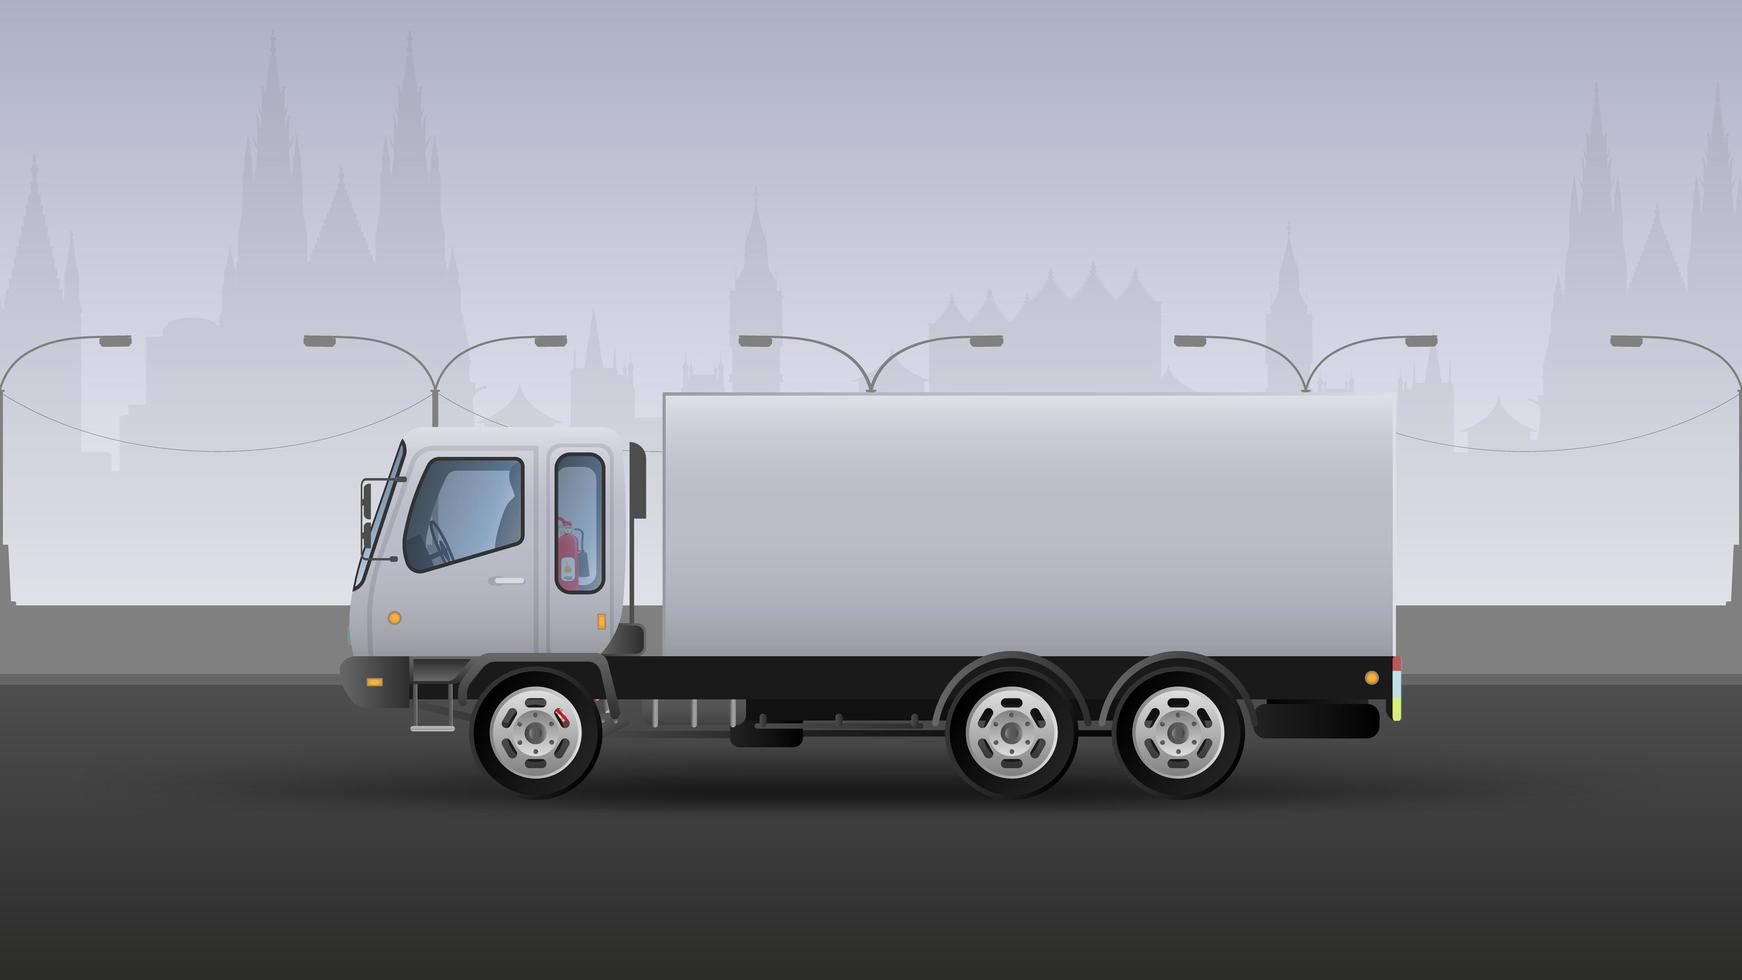 lastbil för snabb leverans. realistisk komposition i vita och gråa toner. stadens bakgrund. vektor illustration.